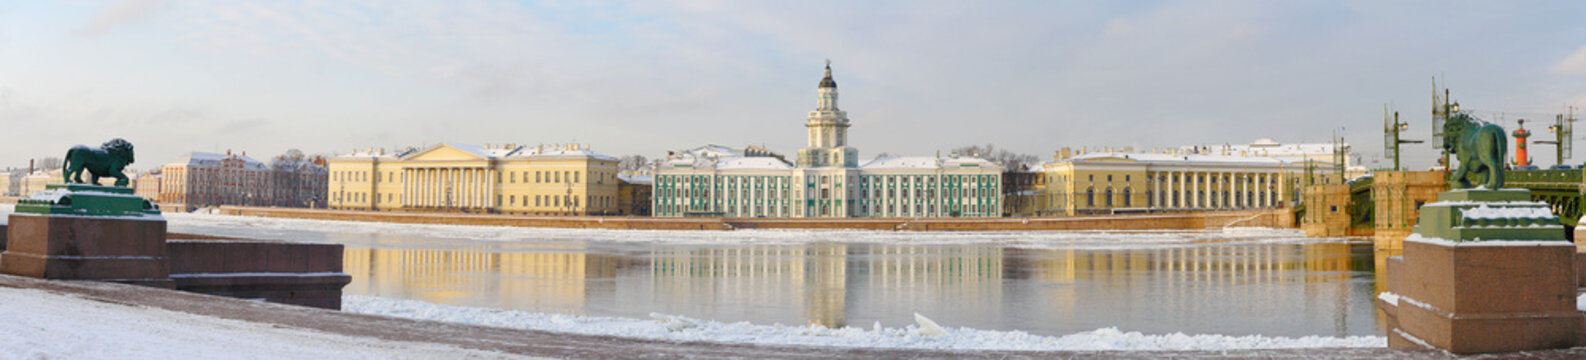 Historical buildings, Saint-Petersburg, Russia